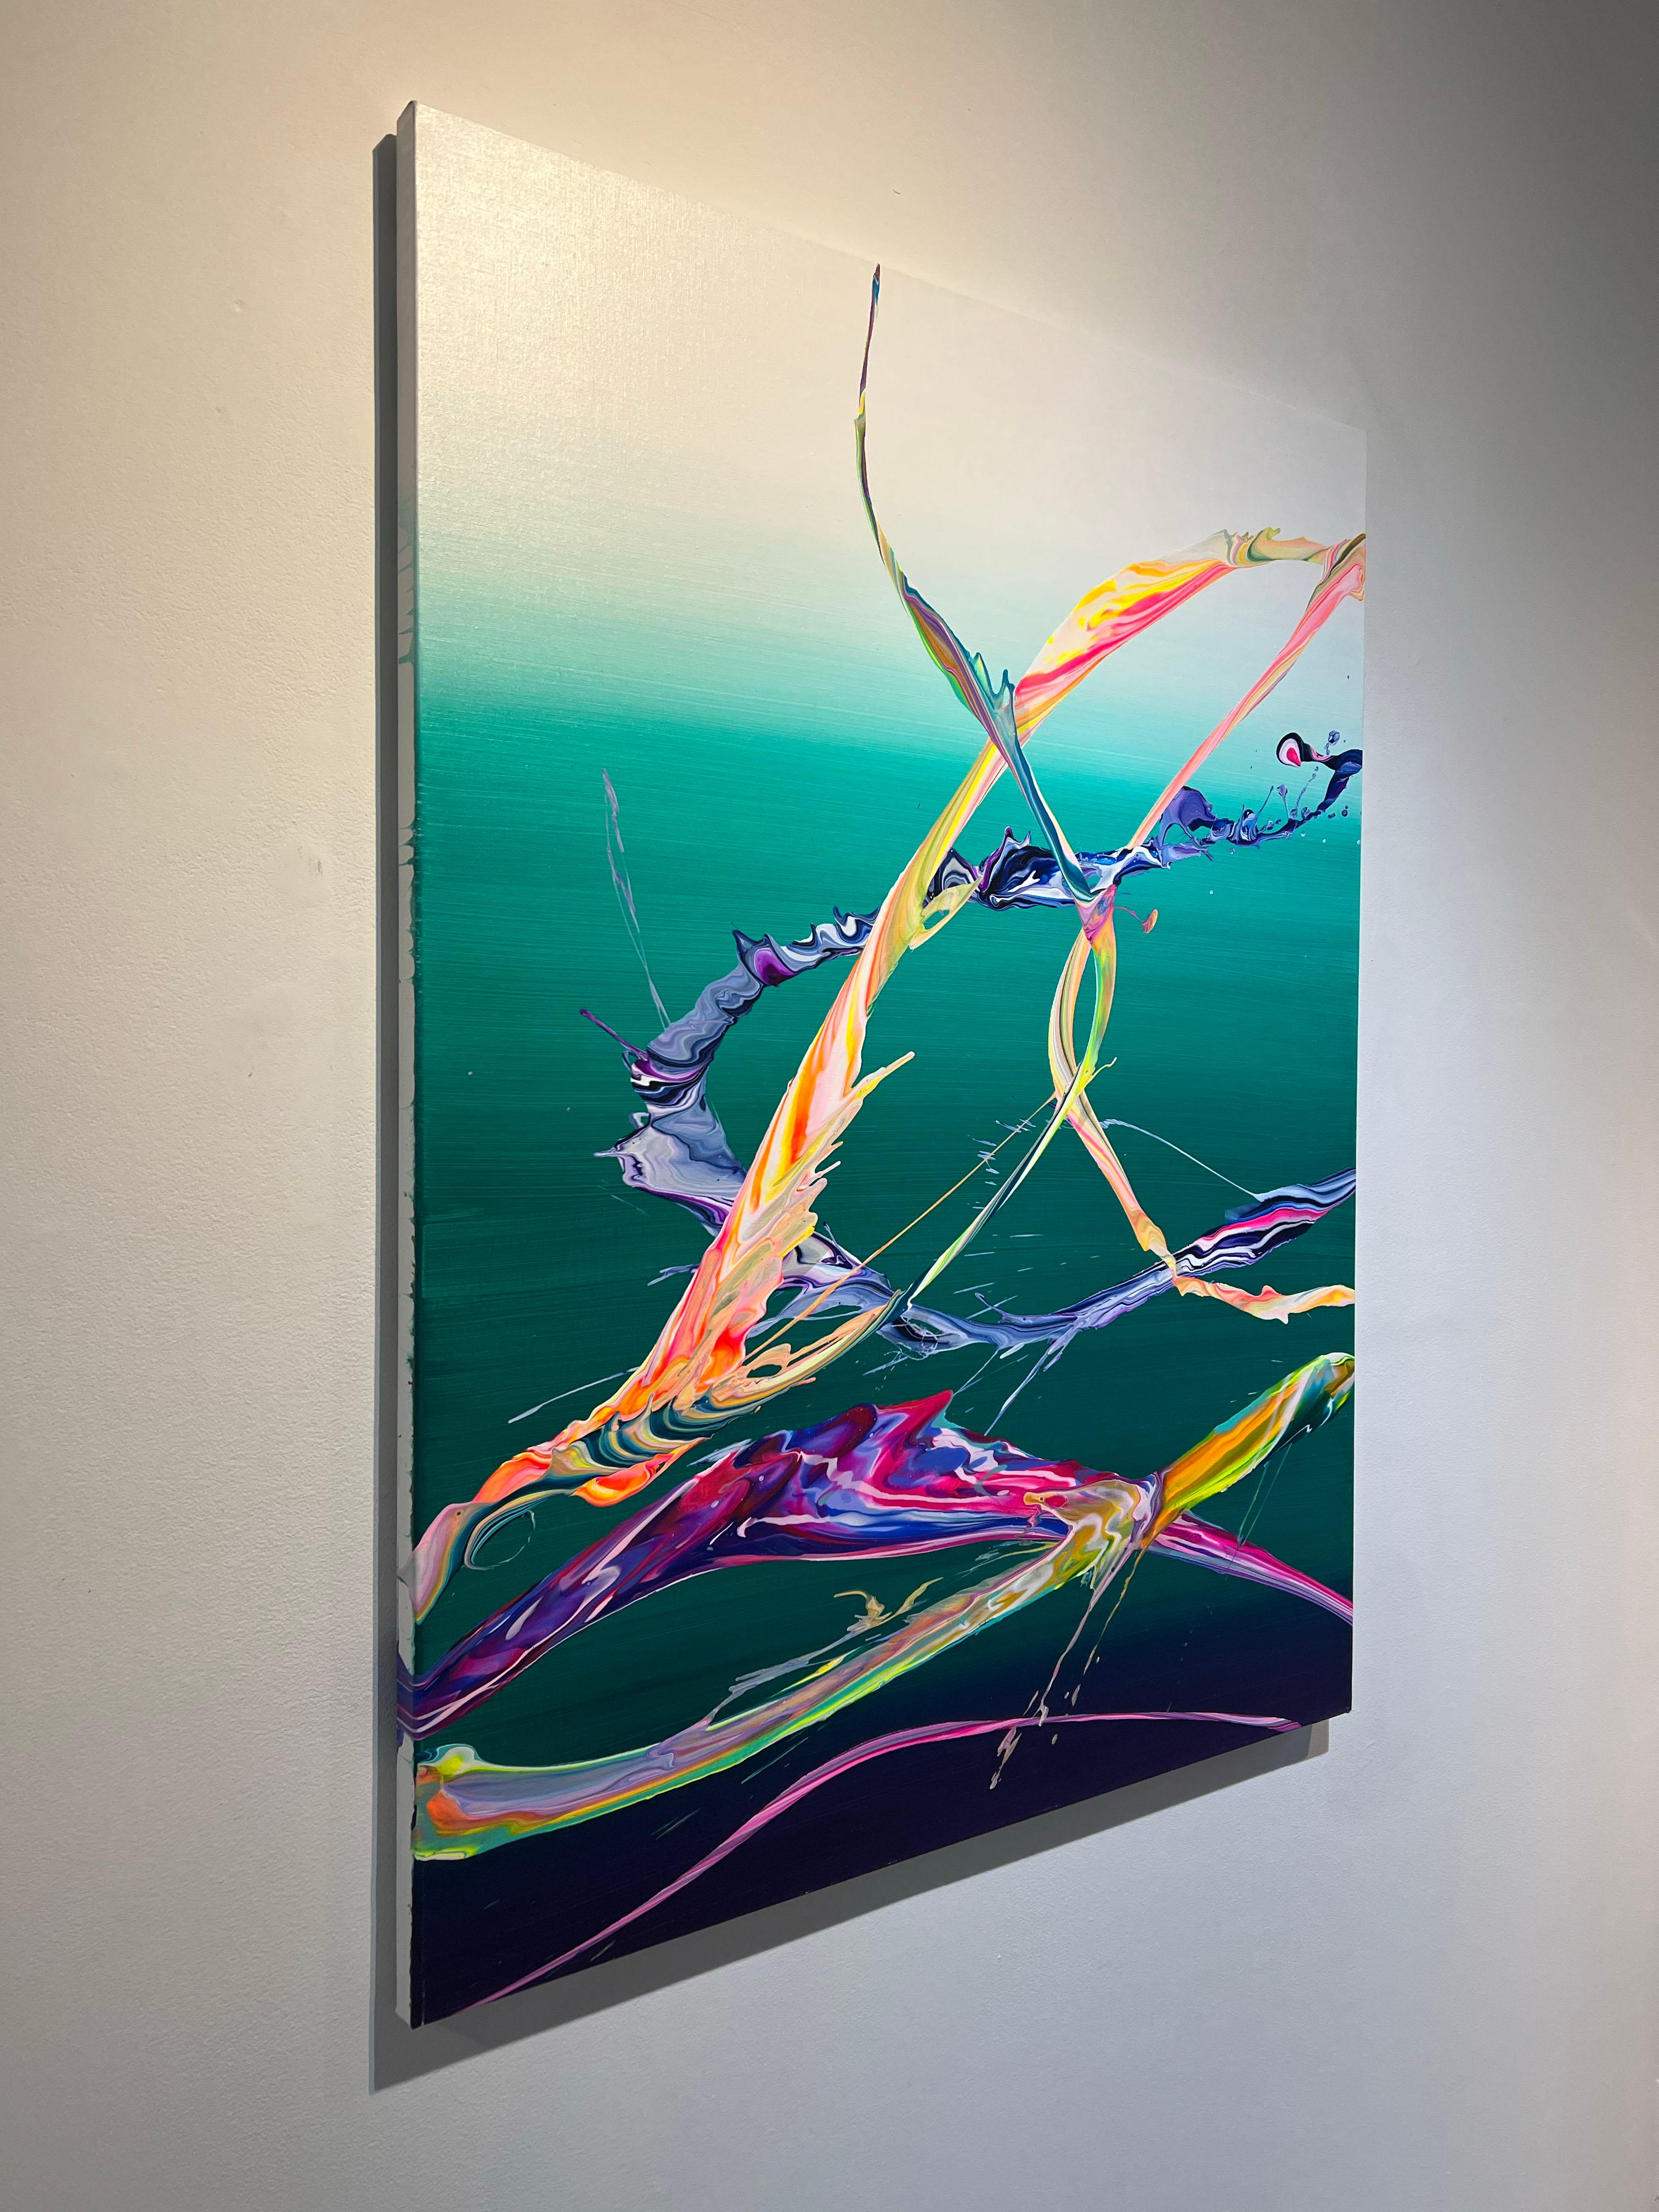 AV 762 - Une abstraction liquide aux couleurs vives sur fond d'ombrage blanc-sarcelle. - Abstrait Painting par Alex Voinea